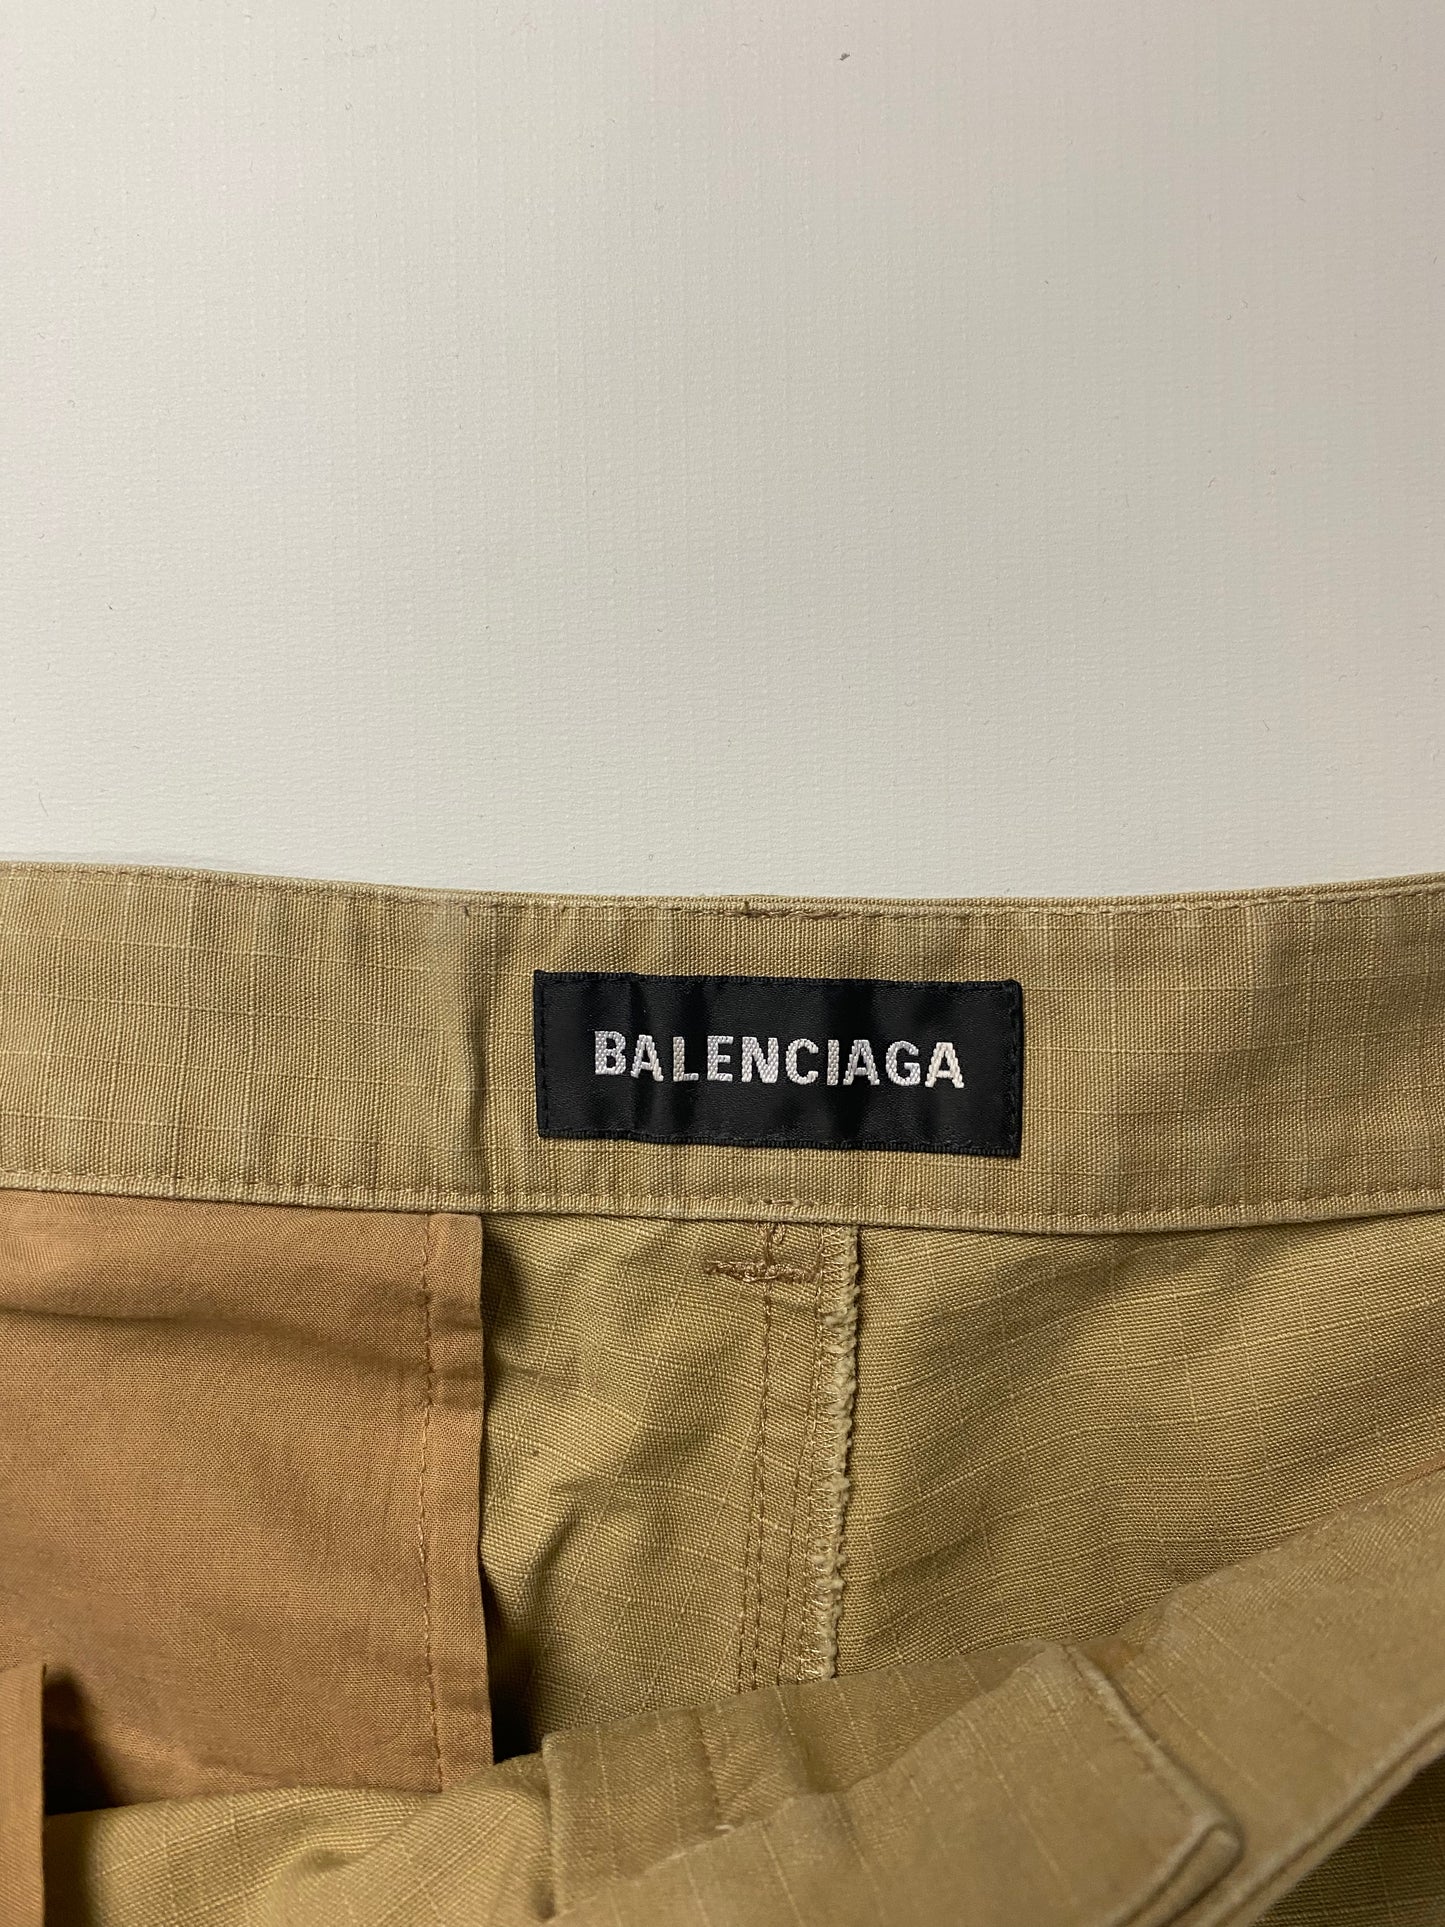 Balenciaga AW20 Cargo pants in tan SZ:48|50